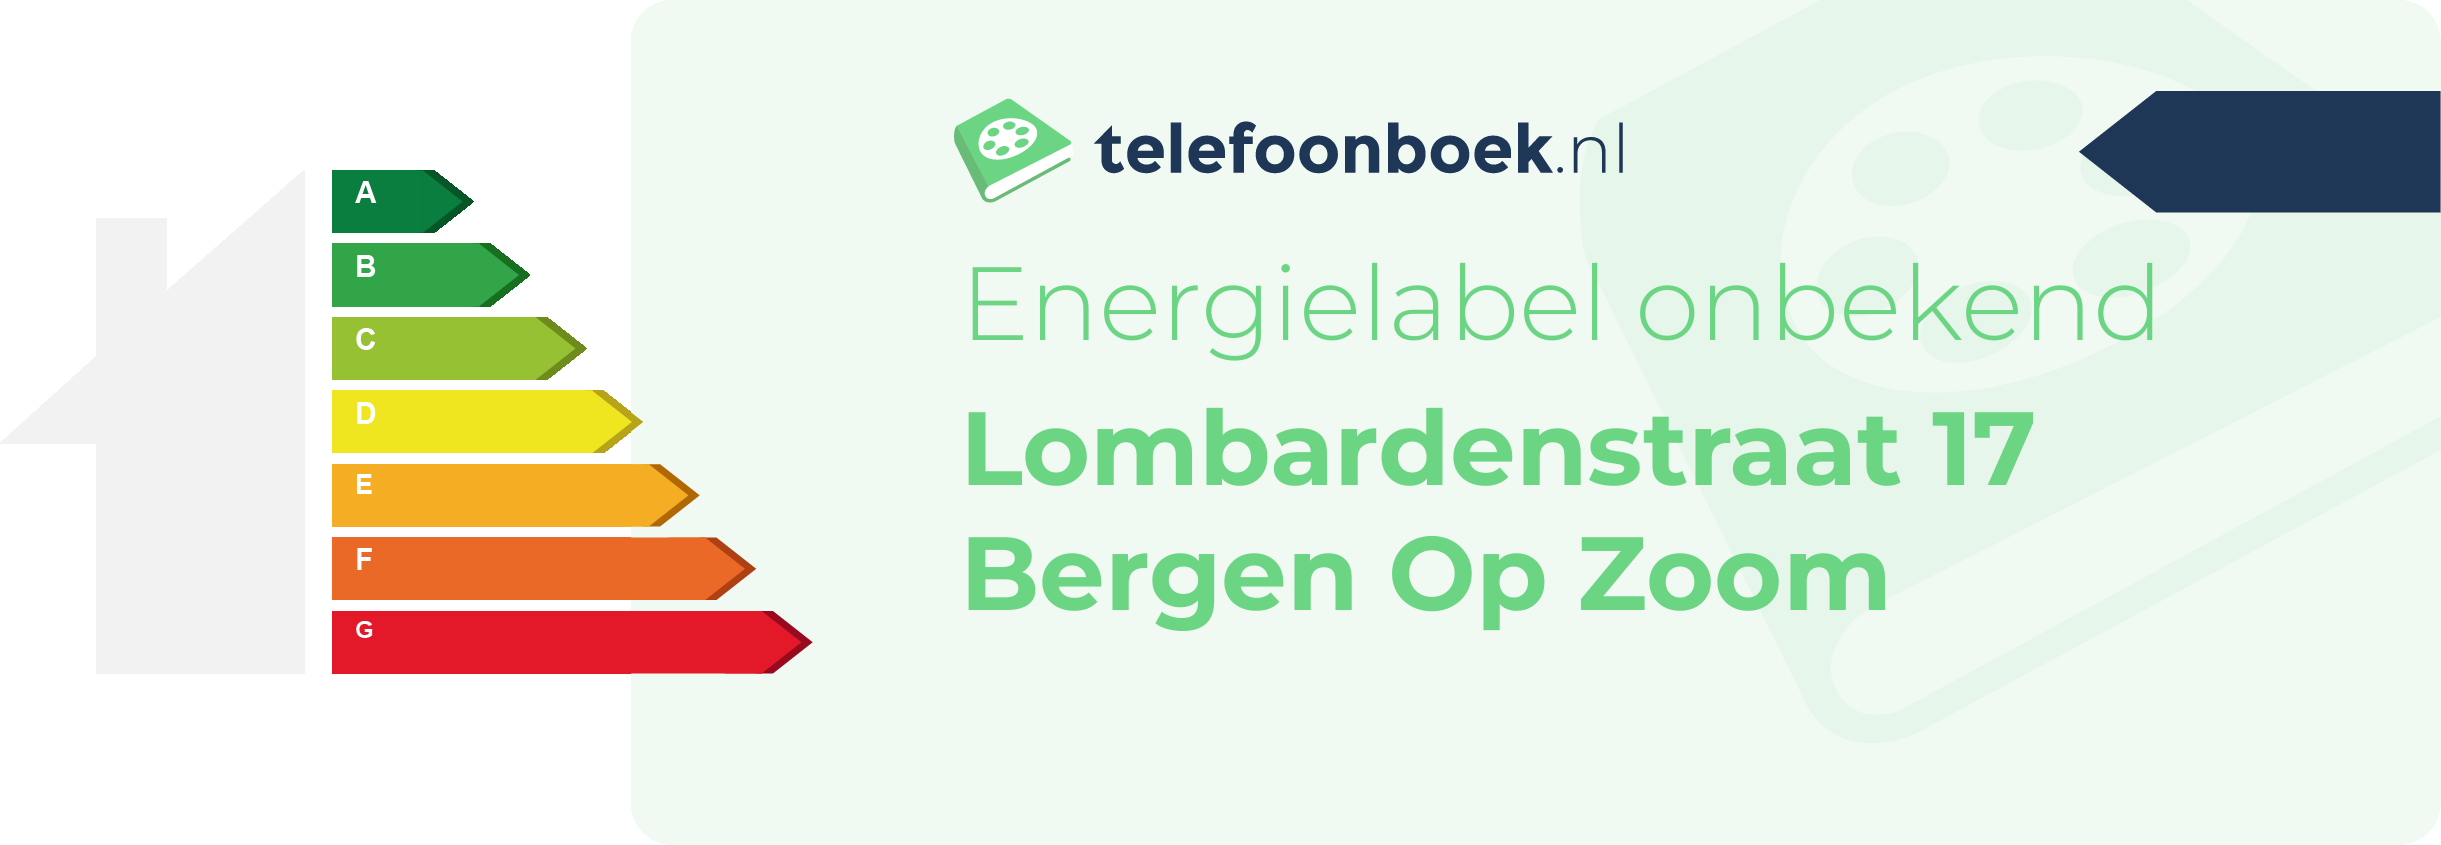 Energielabel Lombardenstraat 17 Bergen Op Zoom